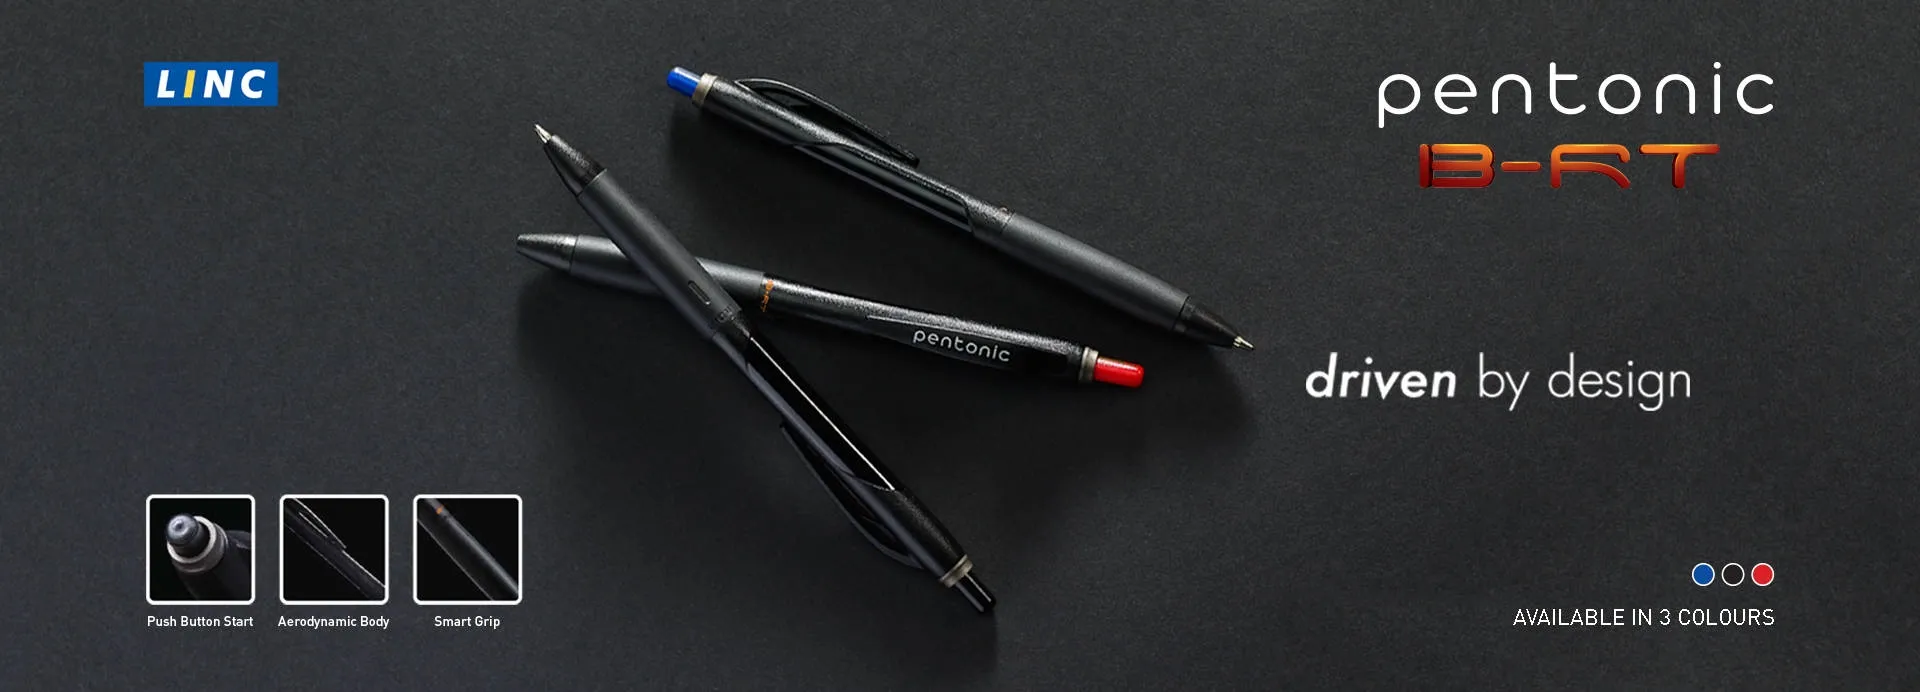 Linc Pentonic B - RT Ball Pen 0.7 mm Red Pen Pack of 1 Pen